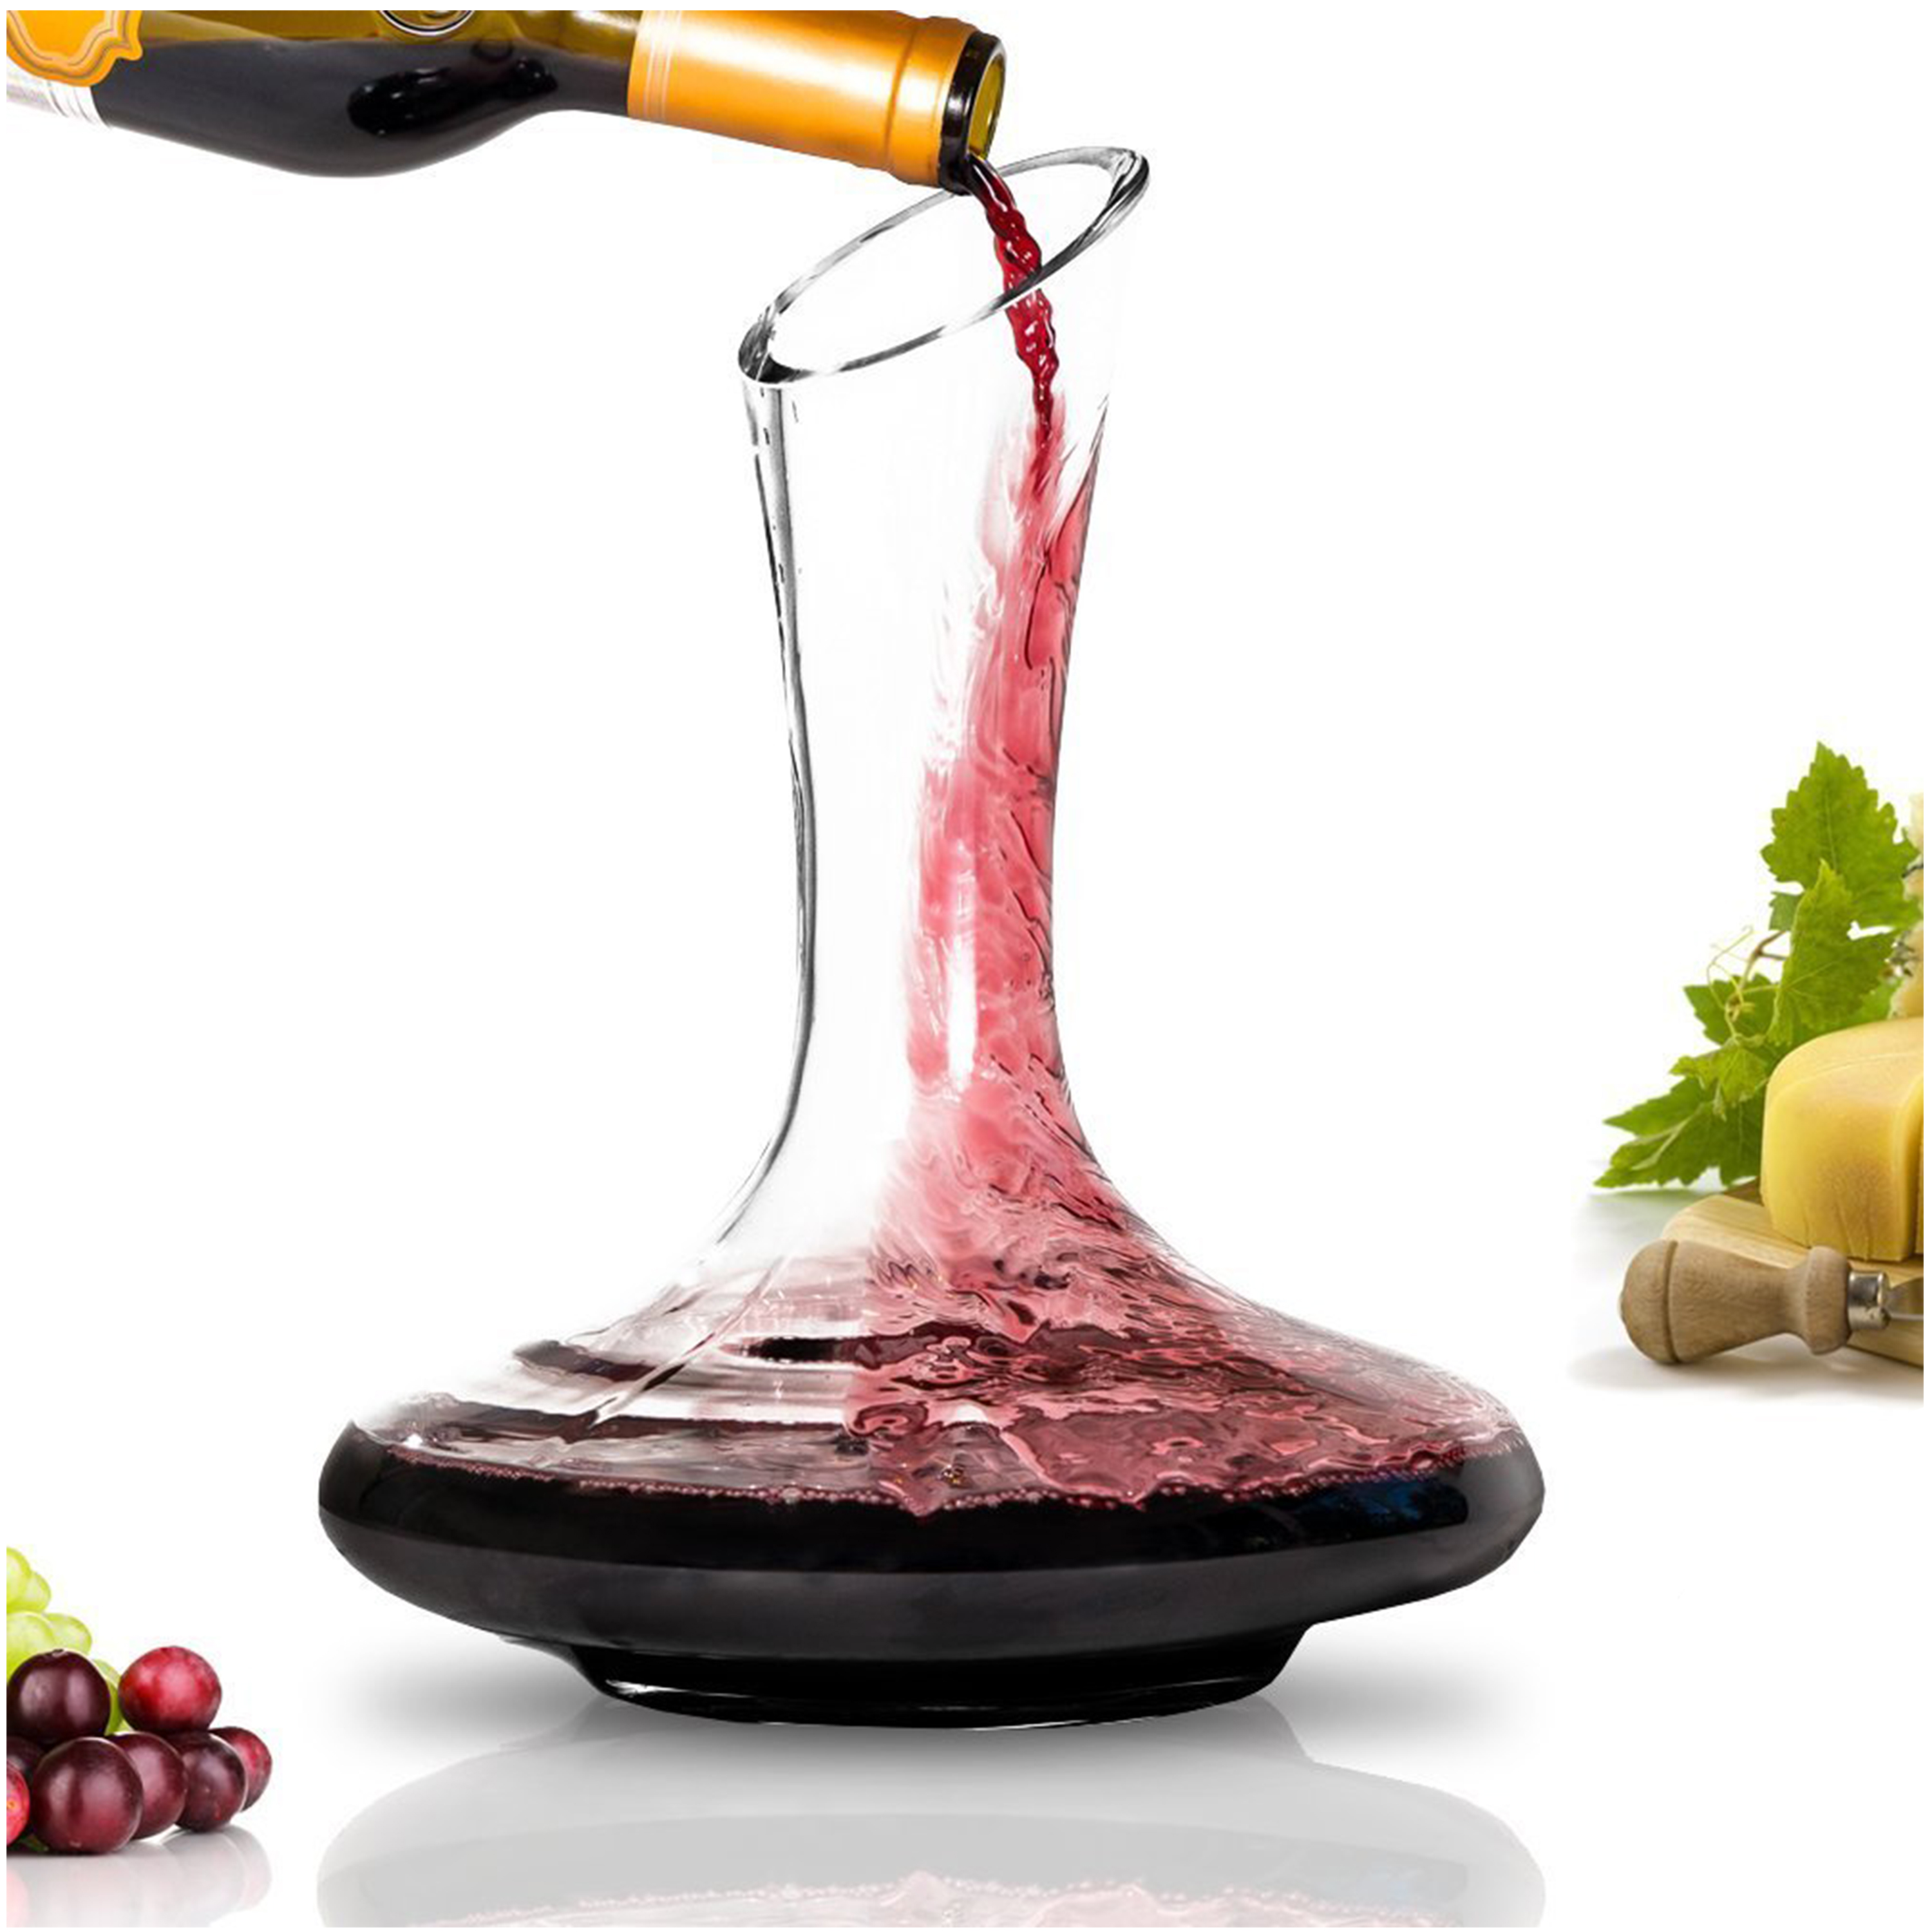 https://www.brewtoatea.com/wp-content/uploads/2019/04/wine-decanter.jpg